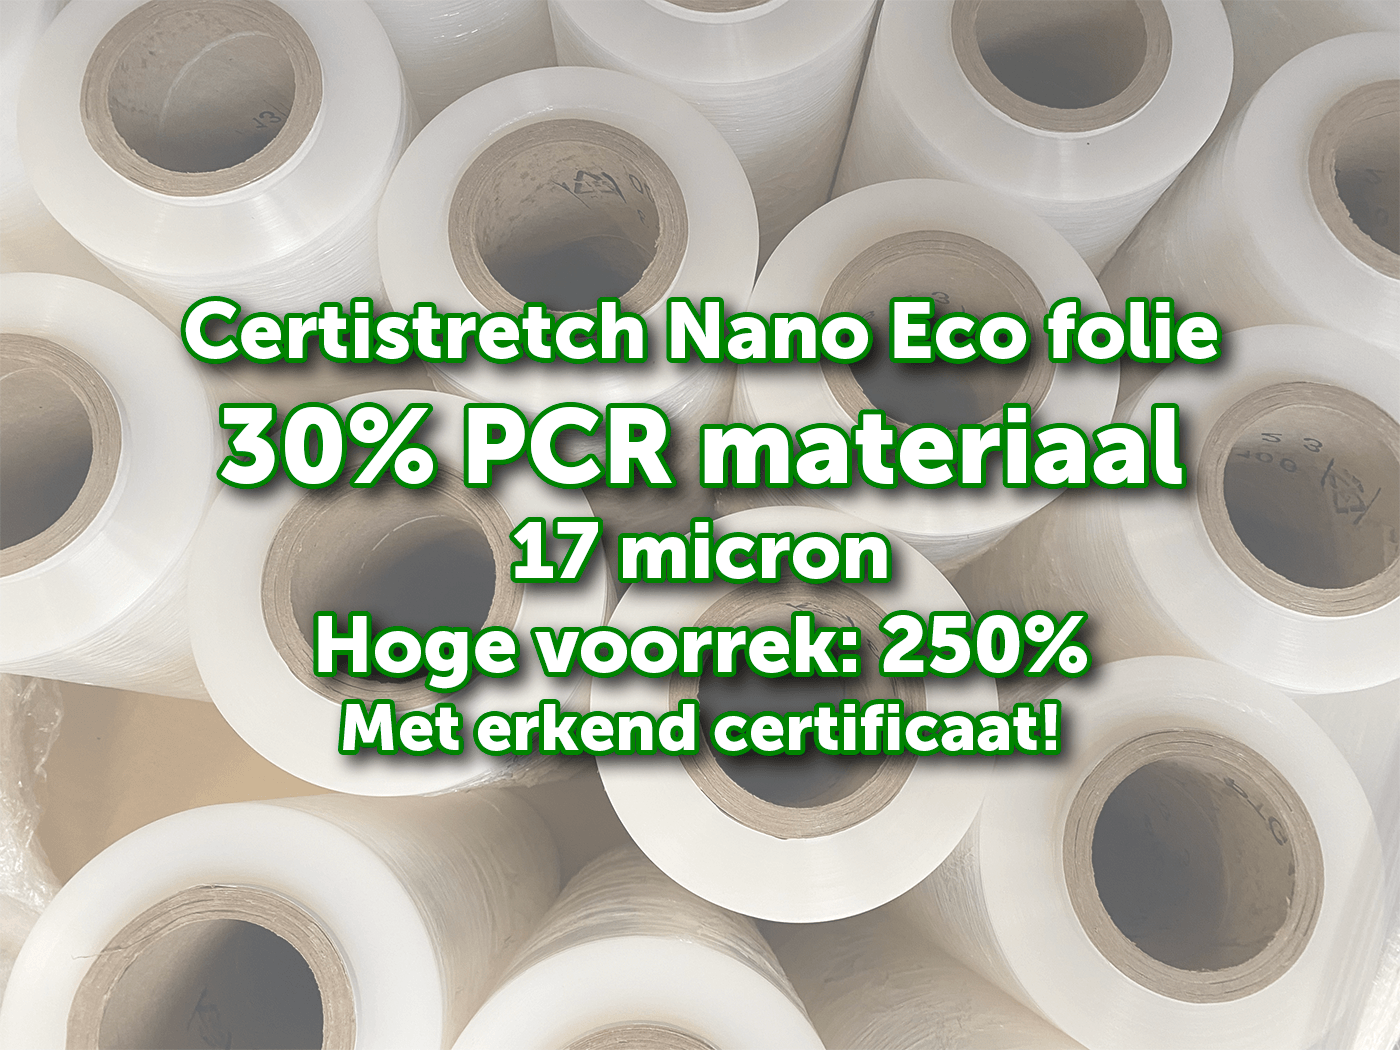 Nieuw in ons gamma: CertiStretch Nano Eco folie met 30% PCR, voorrek van 250% en slechts 17 micron!